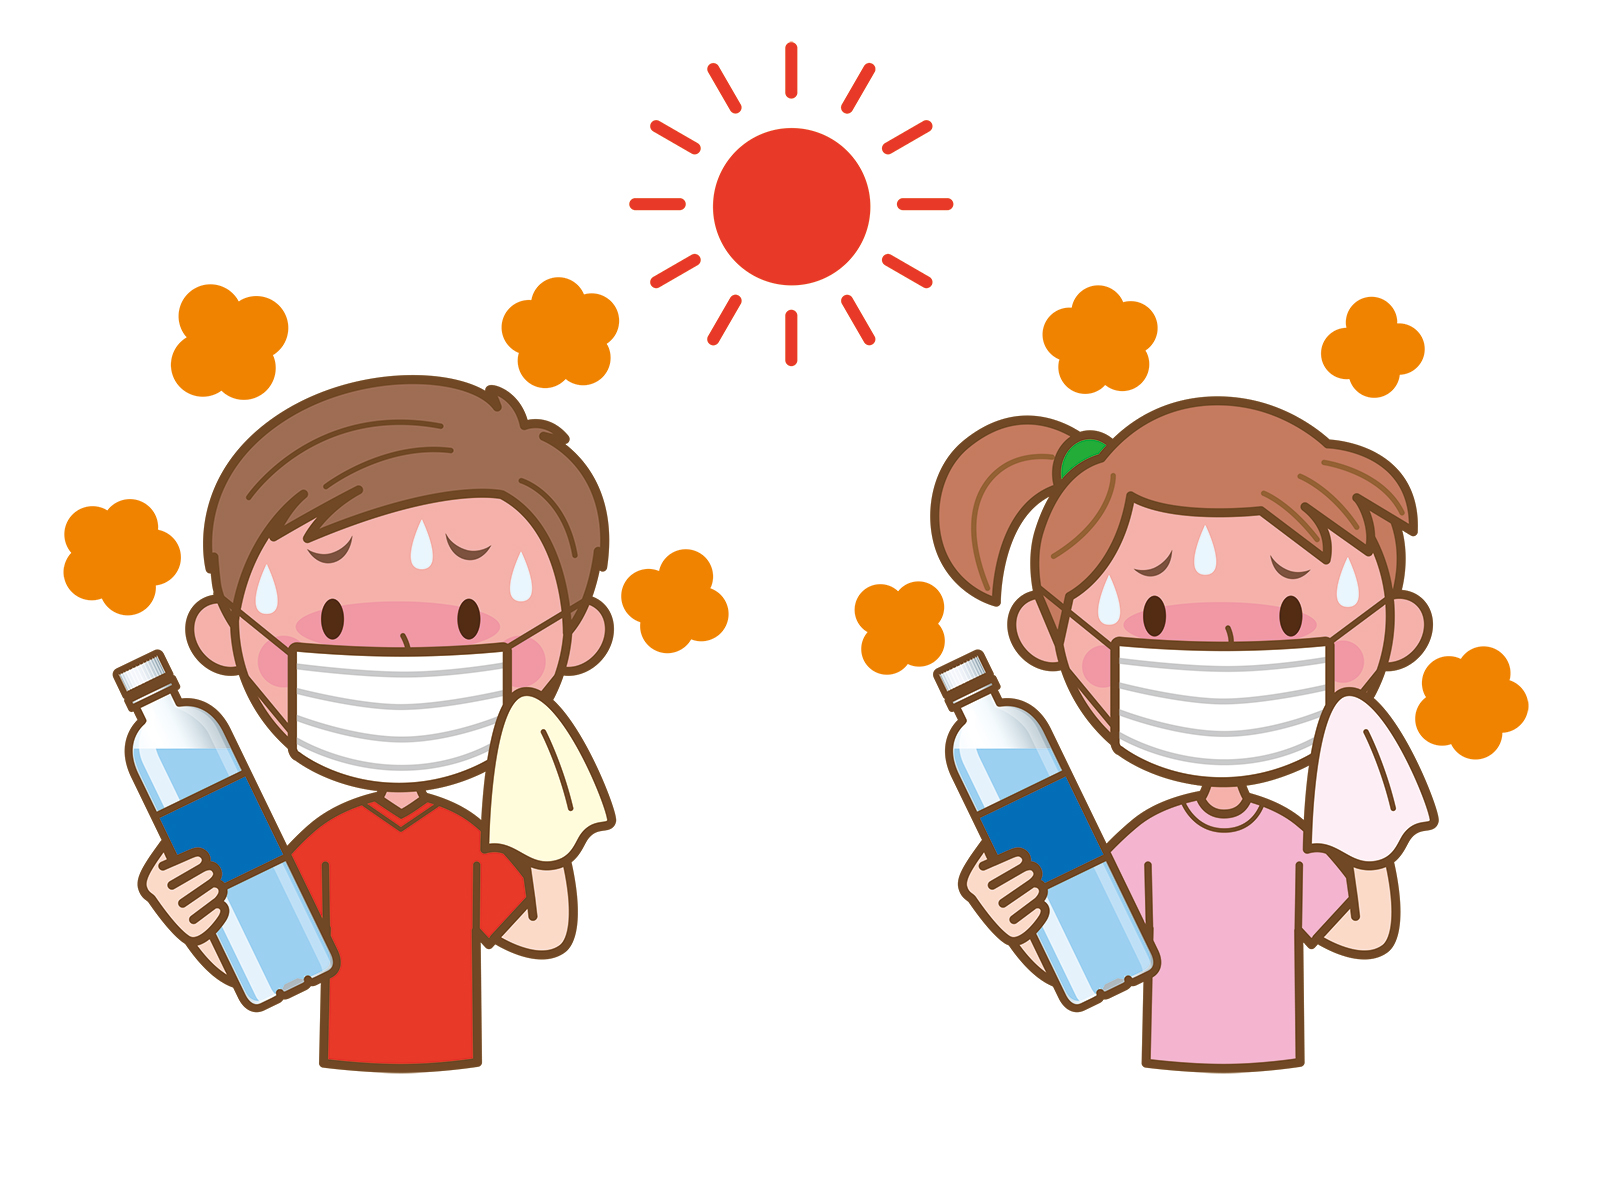 熱中症は重症化すると命にかかわることもあるこわい症状です。暑さを避けこまめな水分補給を心掛けましょう